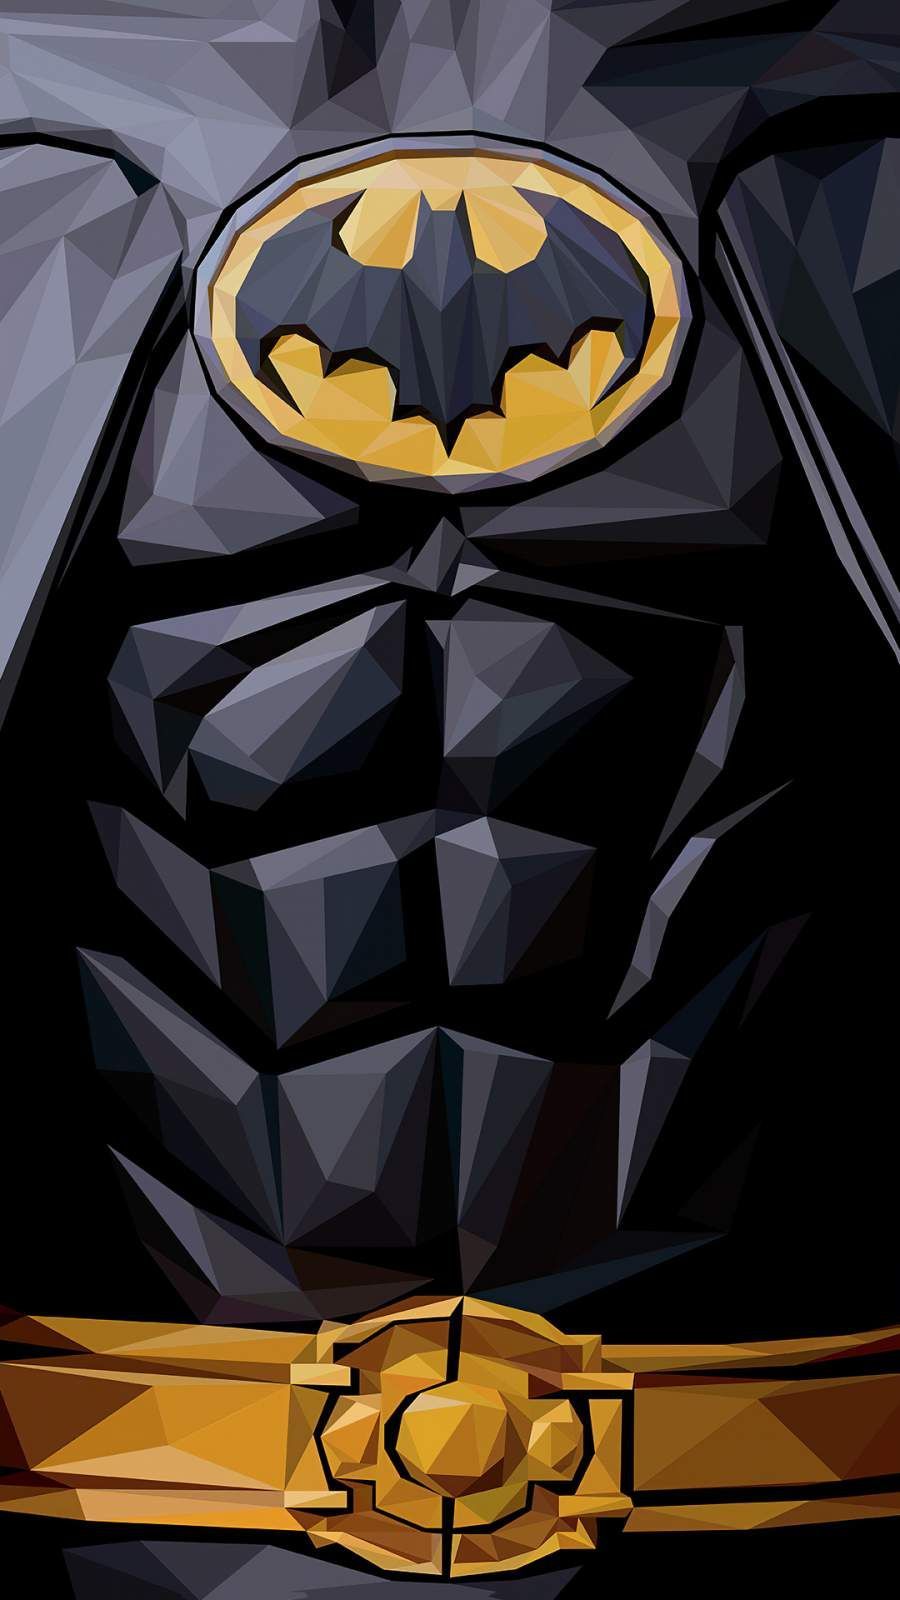 Batman Polygon 4K iPhone Wallpaper. HD .com